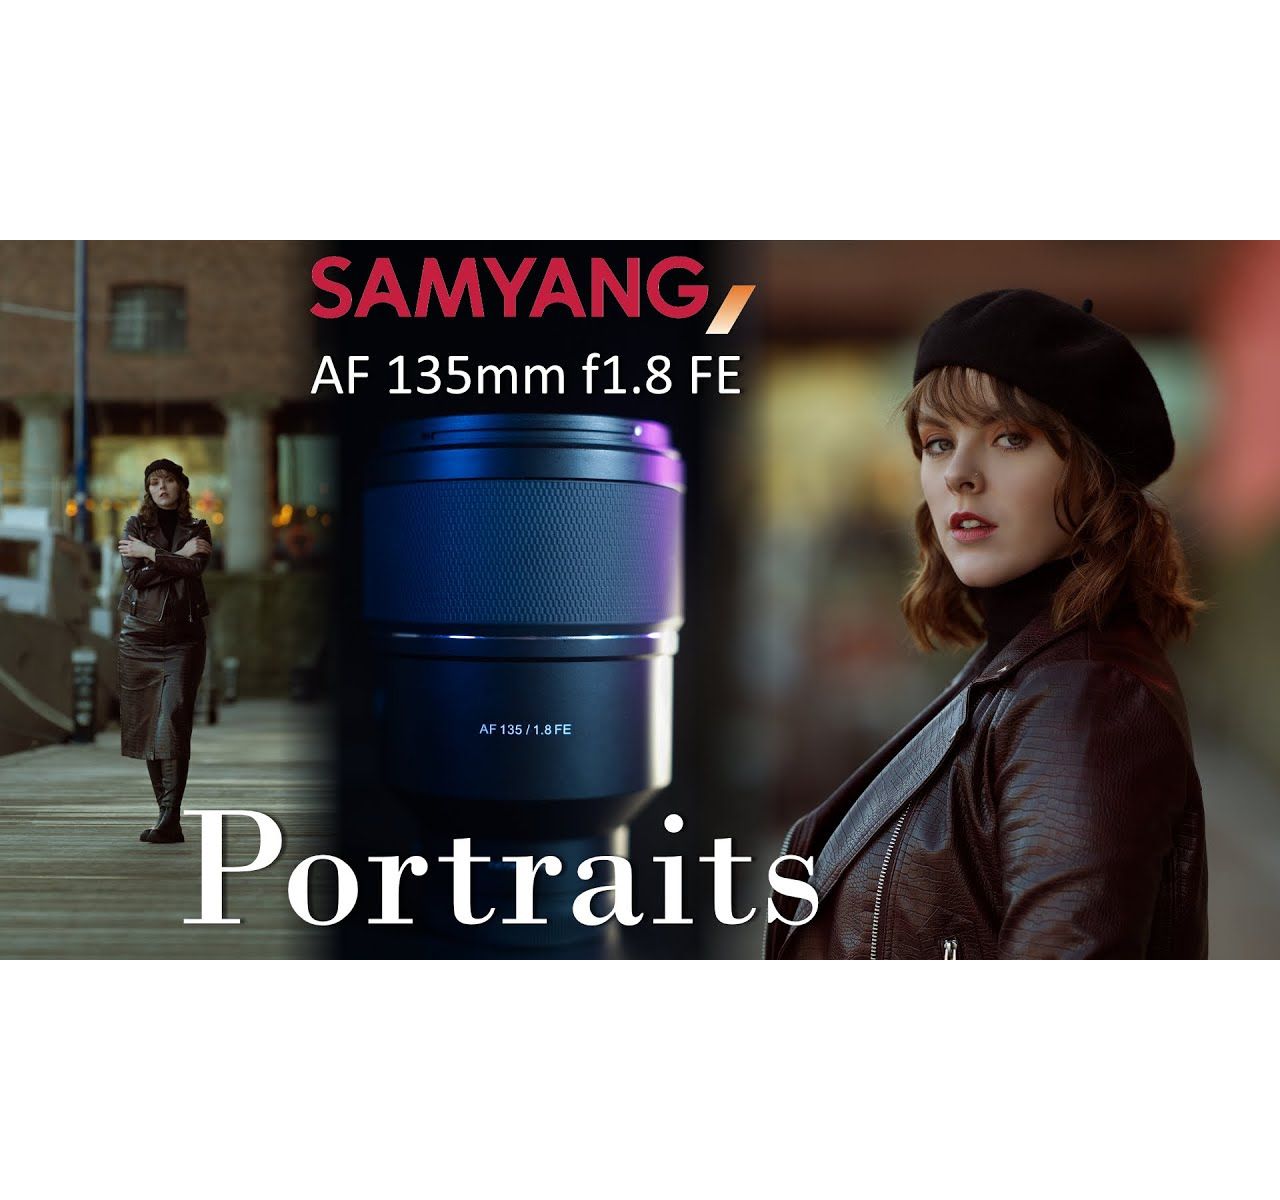 Samyang AF 135mm F1.8 Portraits in the City